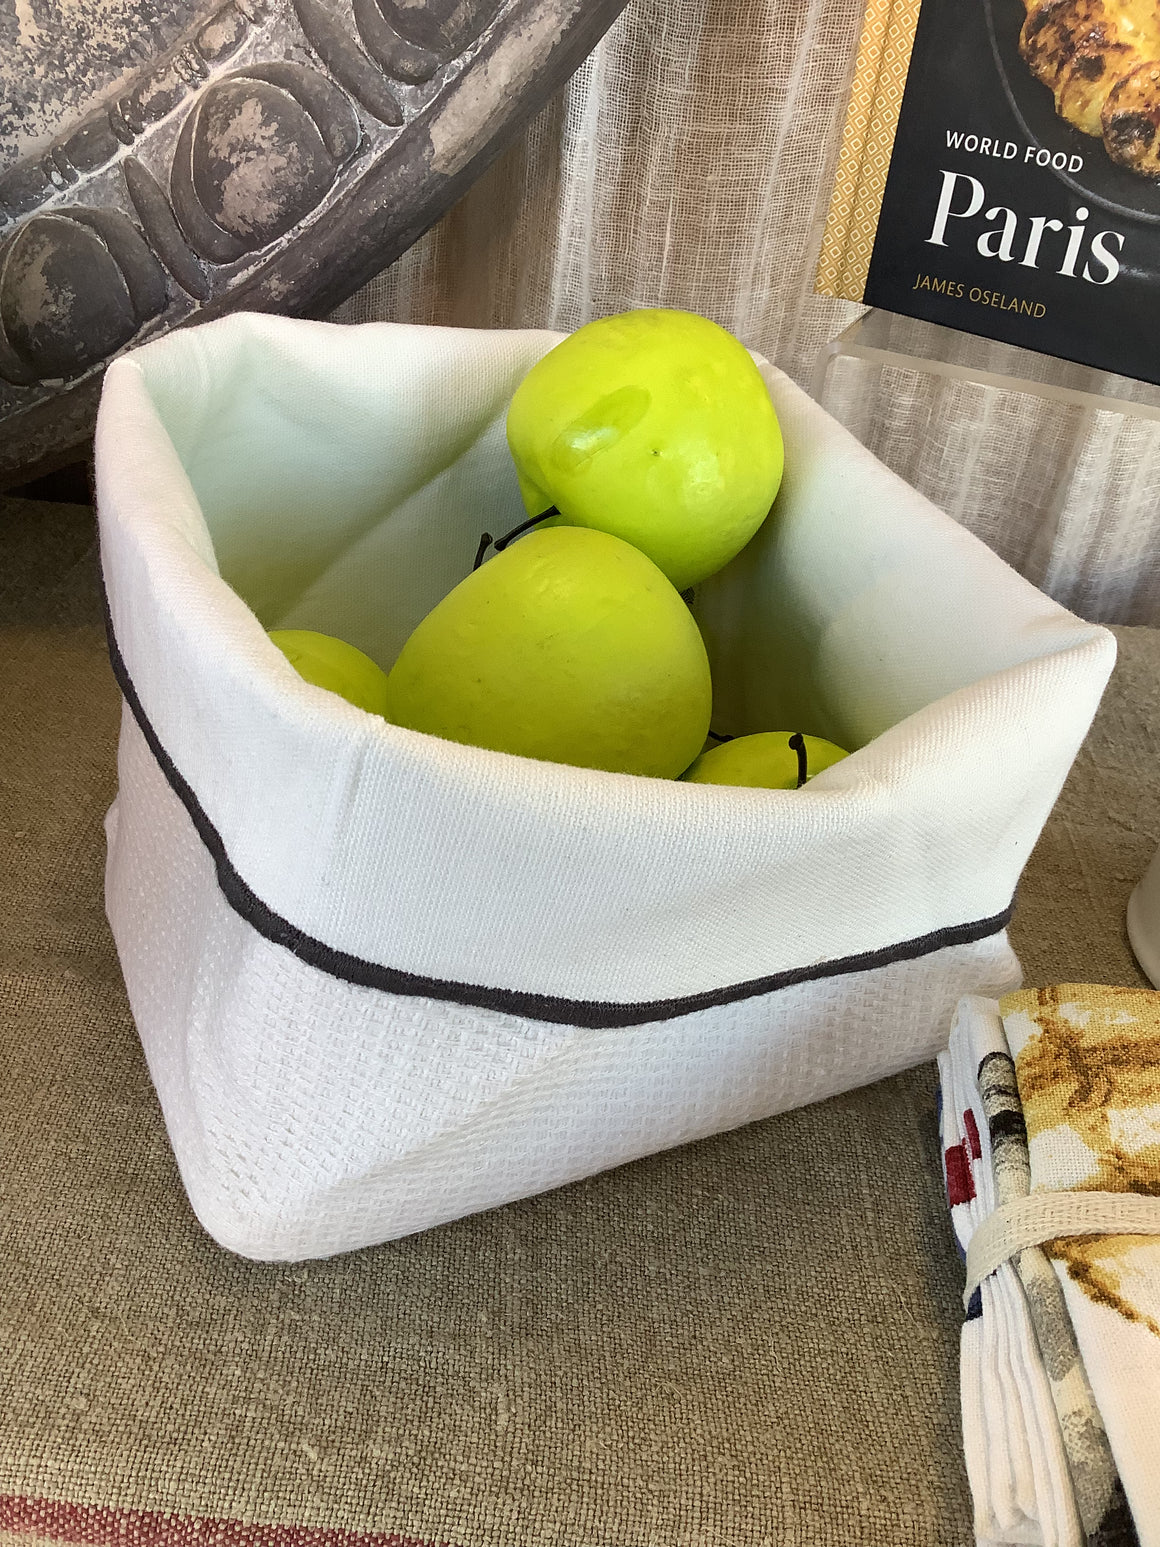 French Bread/Bun Basket - White